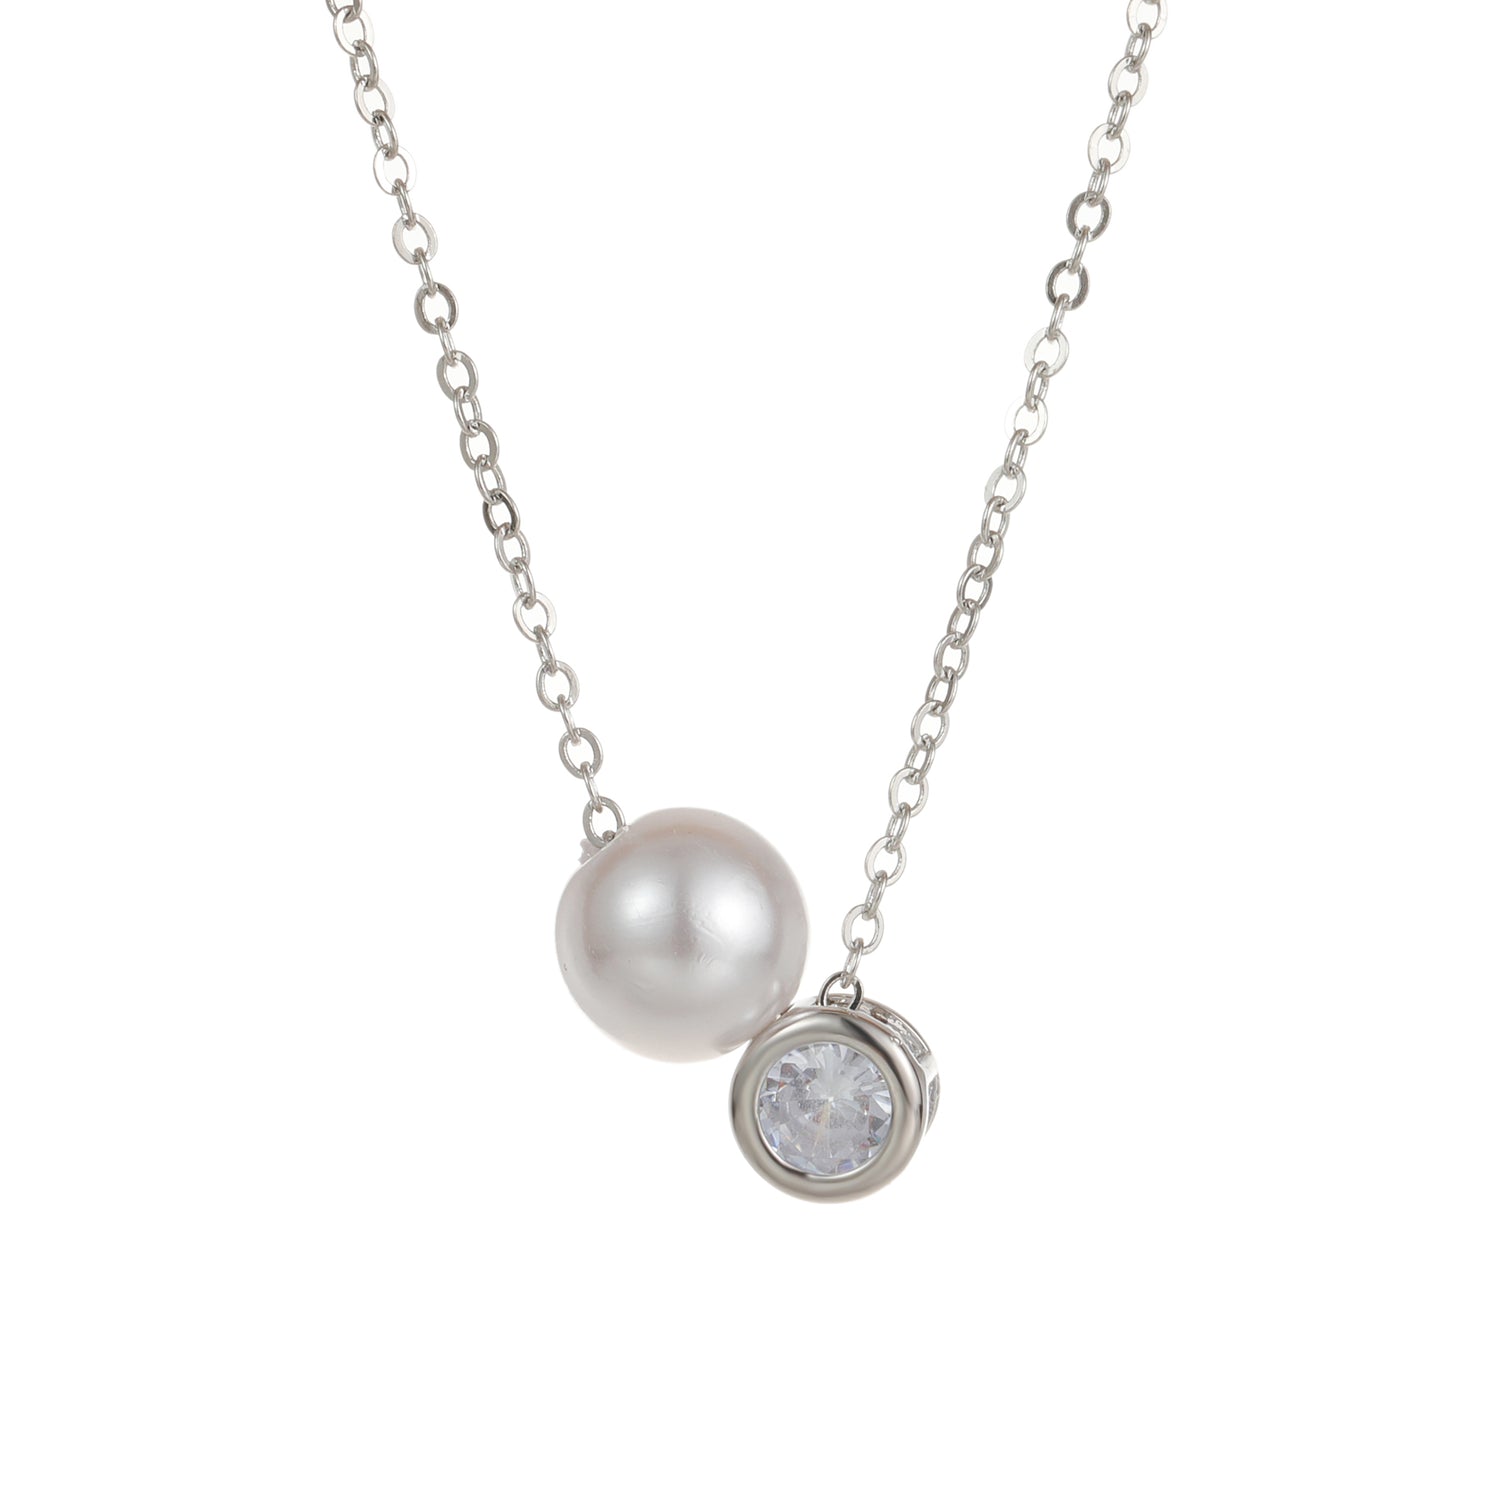 Pearl & Cubic Zirconia Necklace Silver